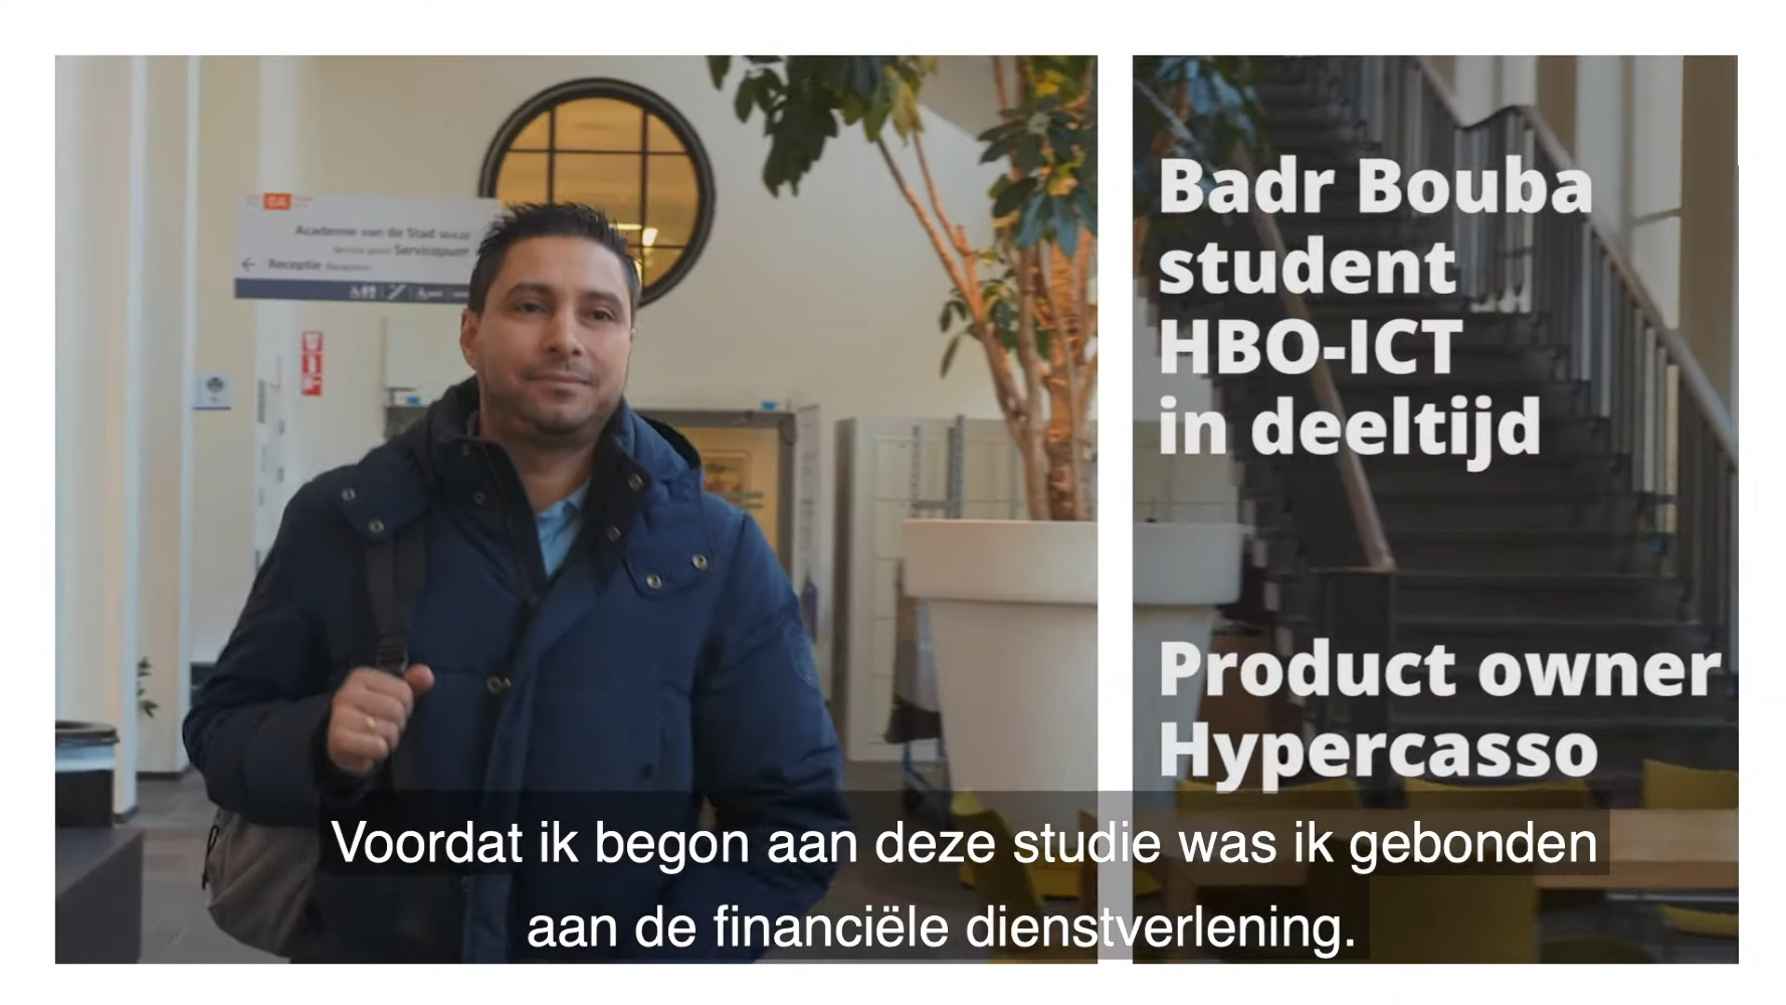 Interessant blijven voor de arbeidsmarkt? Bekijk het verhaal van Badr Bouba, student HBO-ICT deeltijd